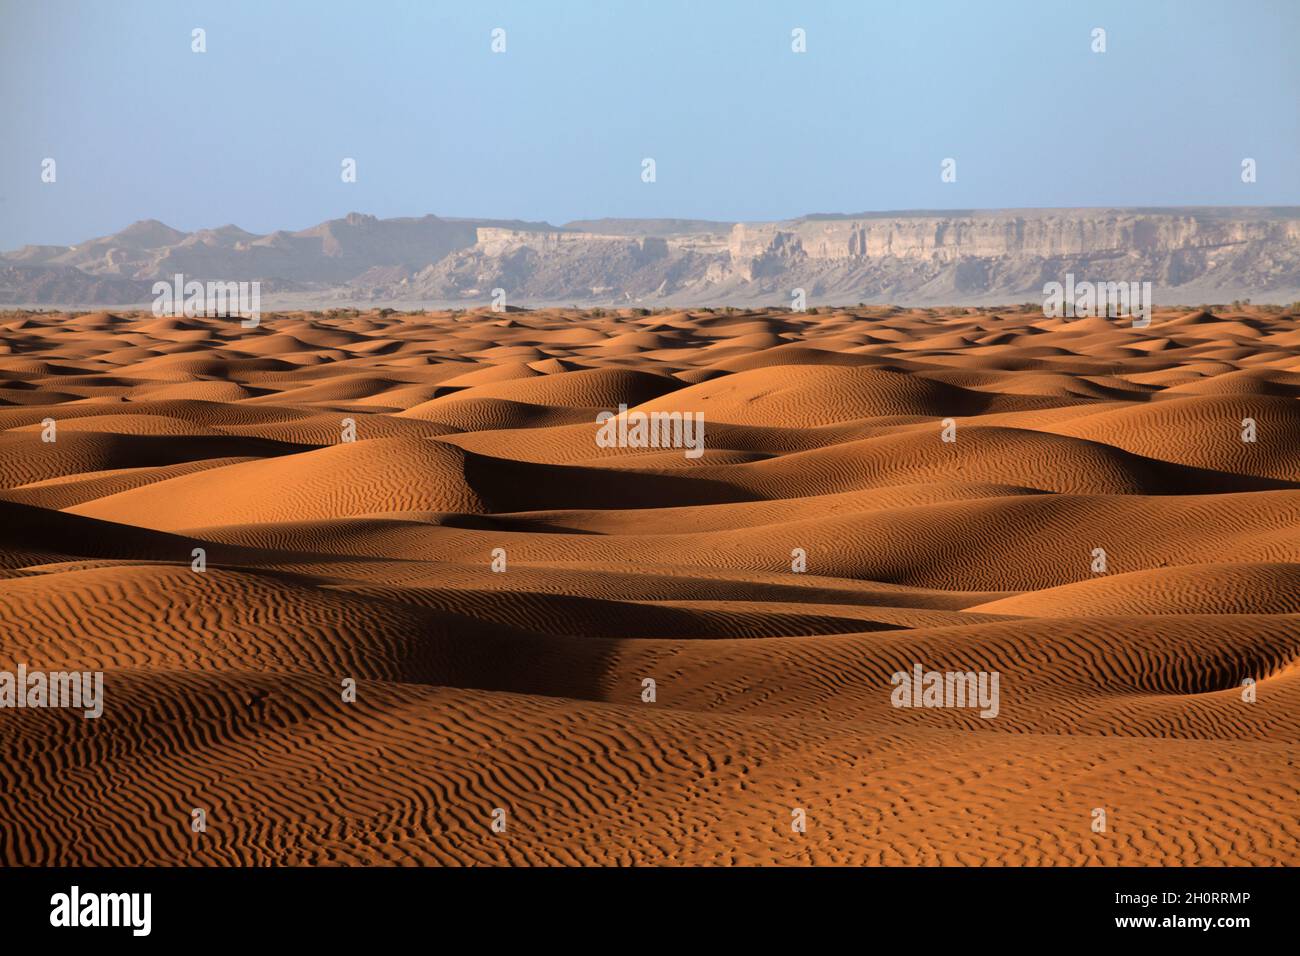 Dunes de sable et paysage de montagne dans le désert, Arabie Saoudite Banque D'Images